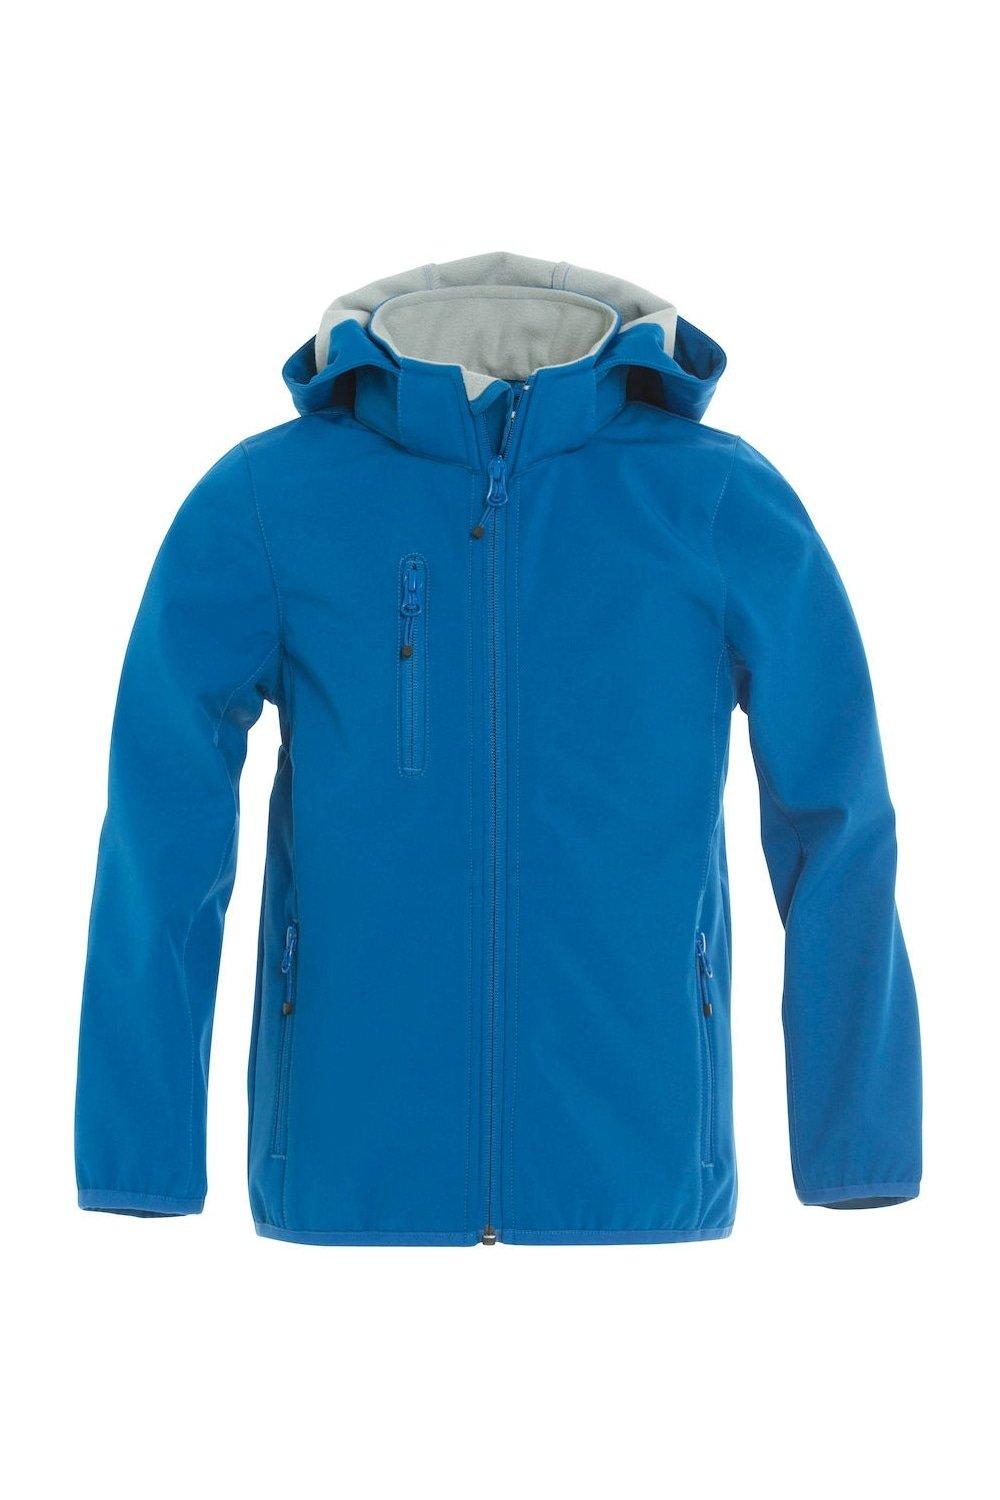 Базовая куртка Soft Shell Clique, синий